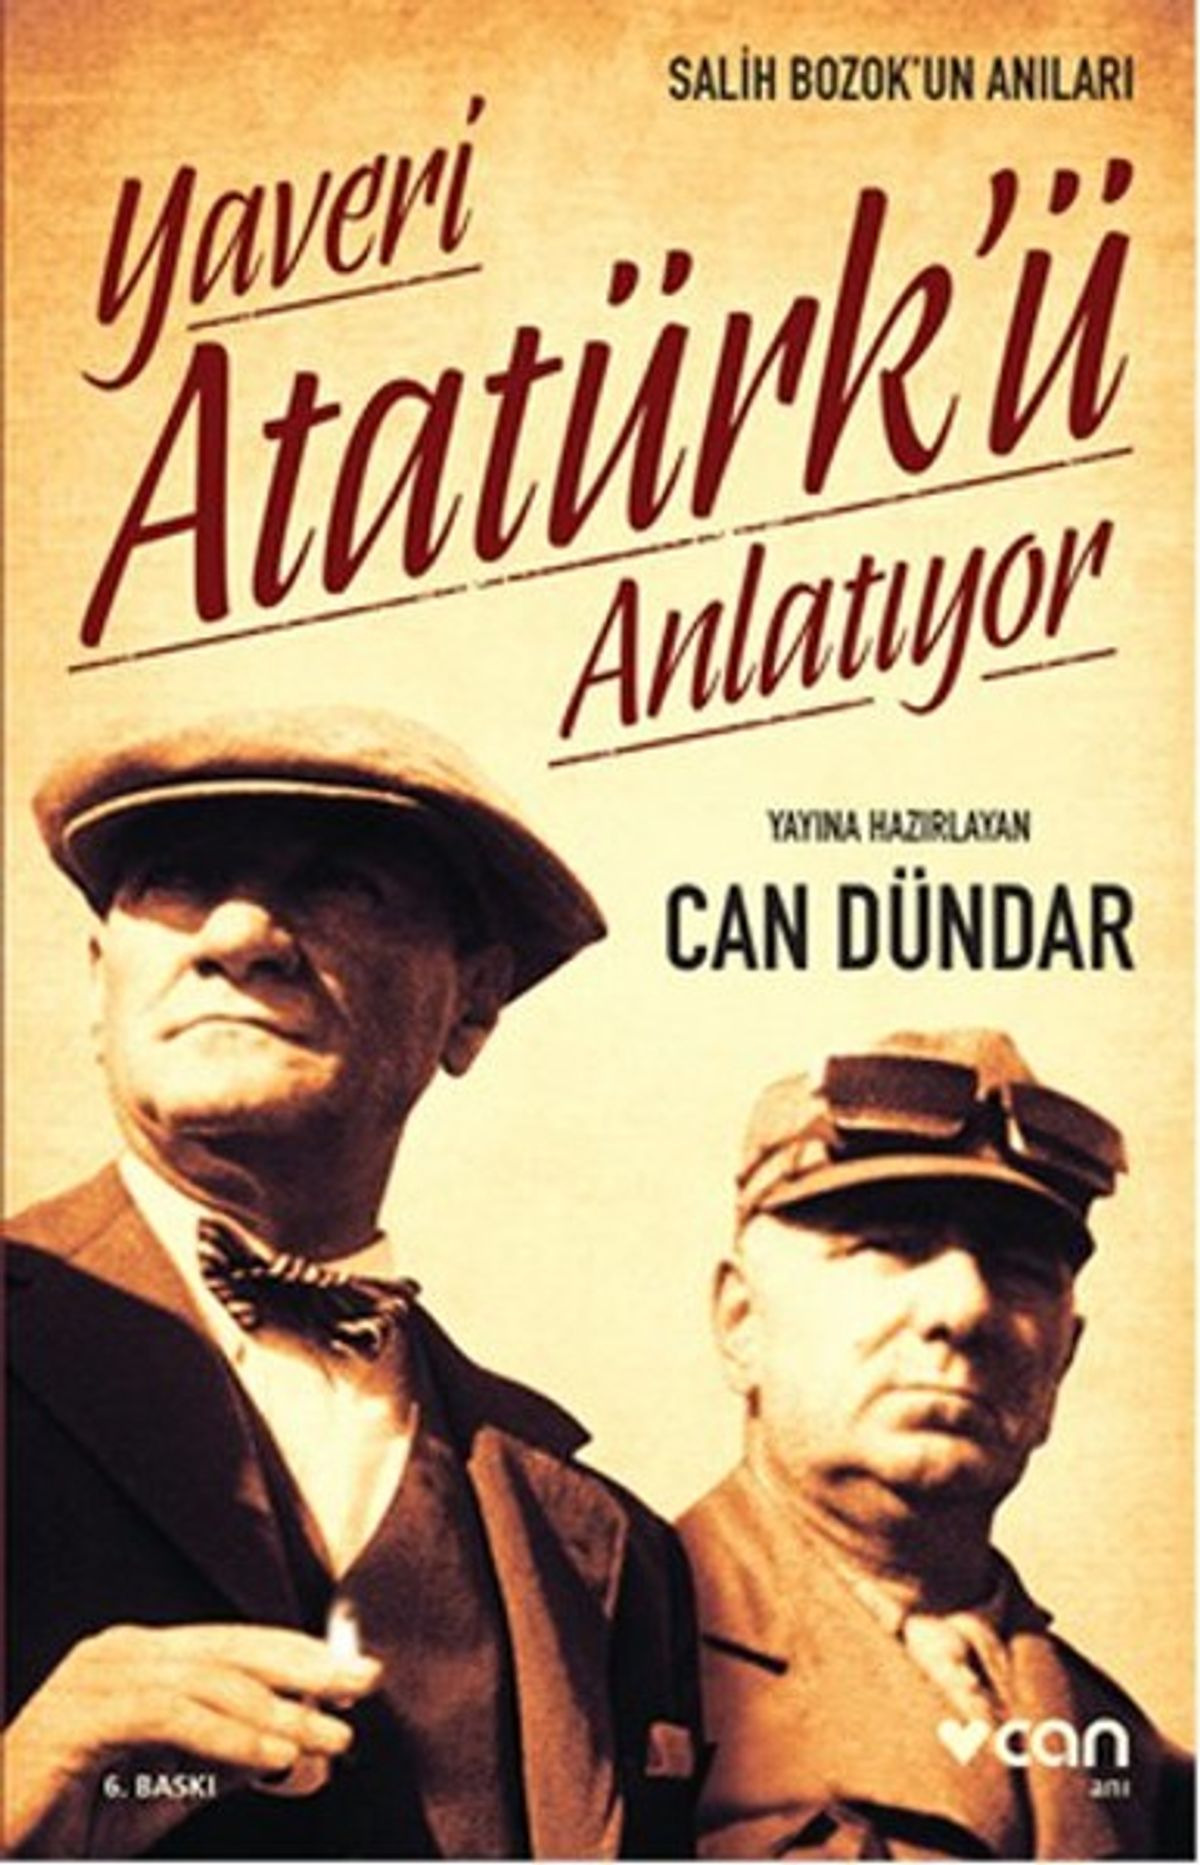 Yaveri Atatürkü Anlatıyor-Salih Bozuk-Can Dündar-2001-277s